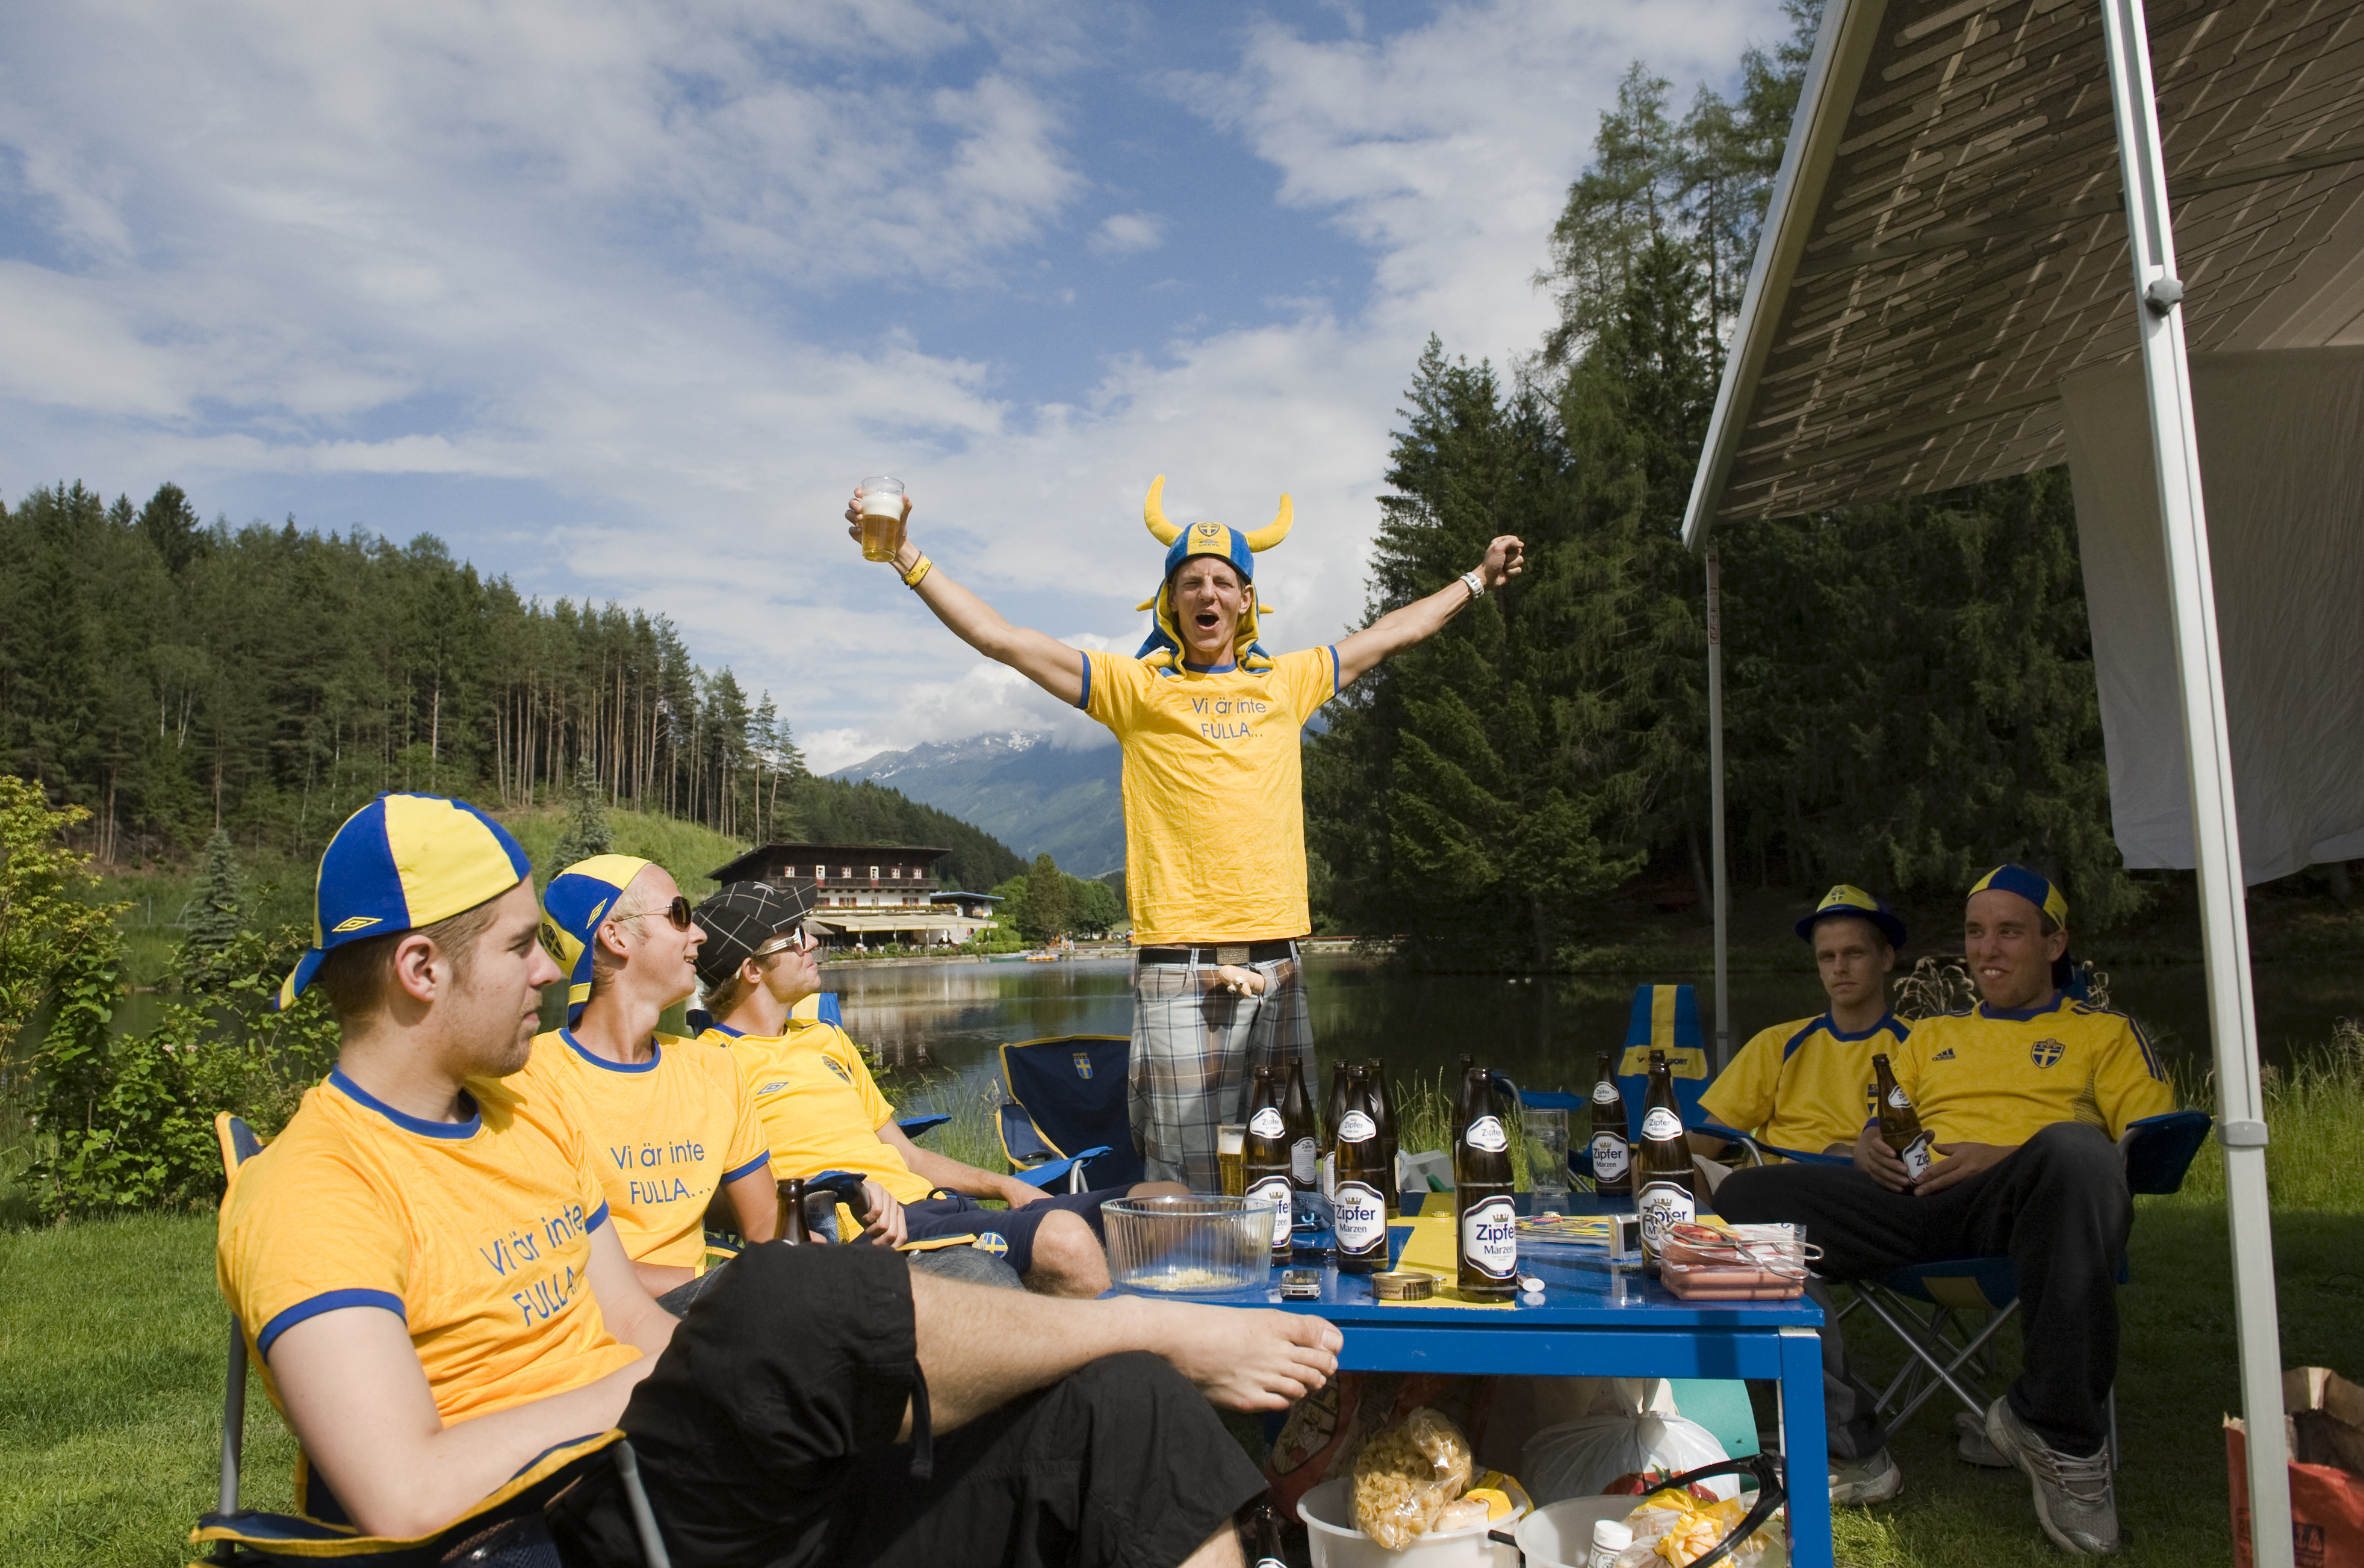 Senast Camp Sweden hyrde camping för sina medlemmar var under EM 2008. Då utanför österrikiska Innsbruck.